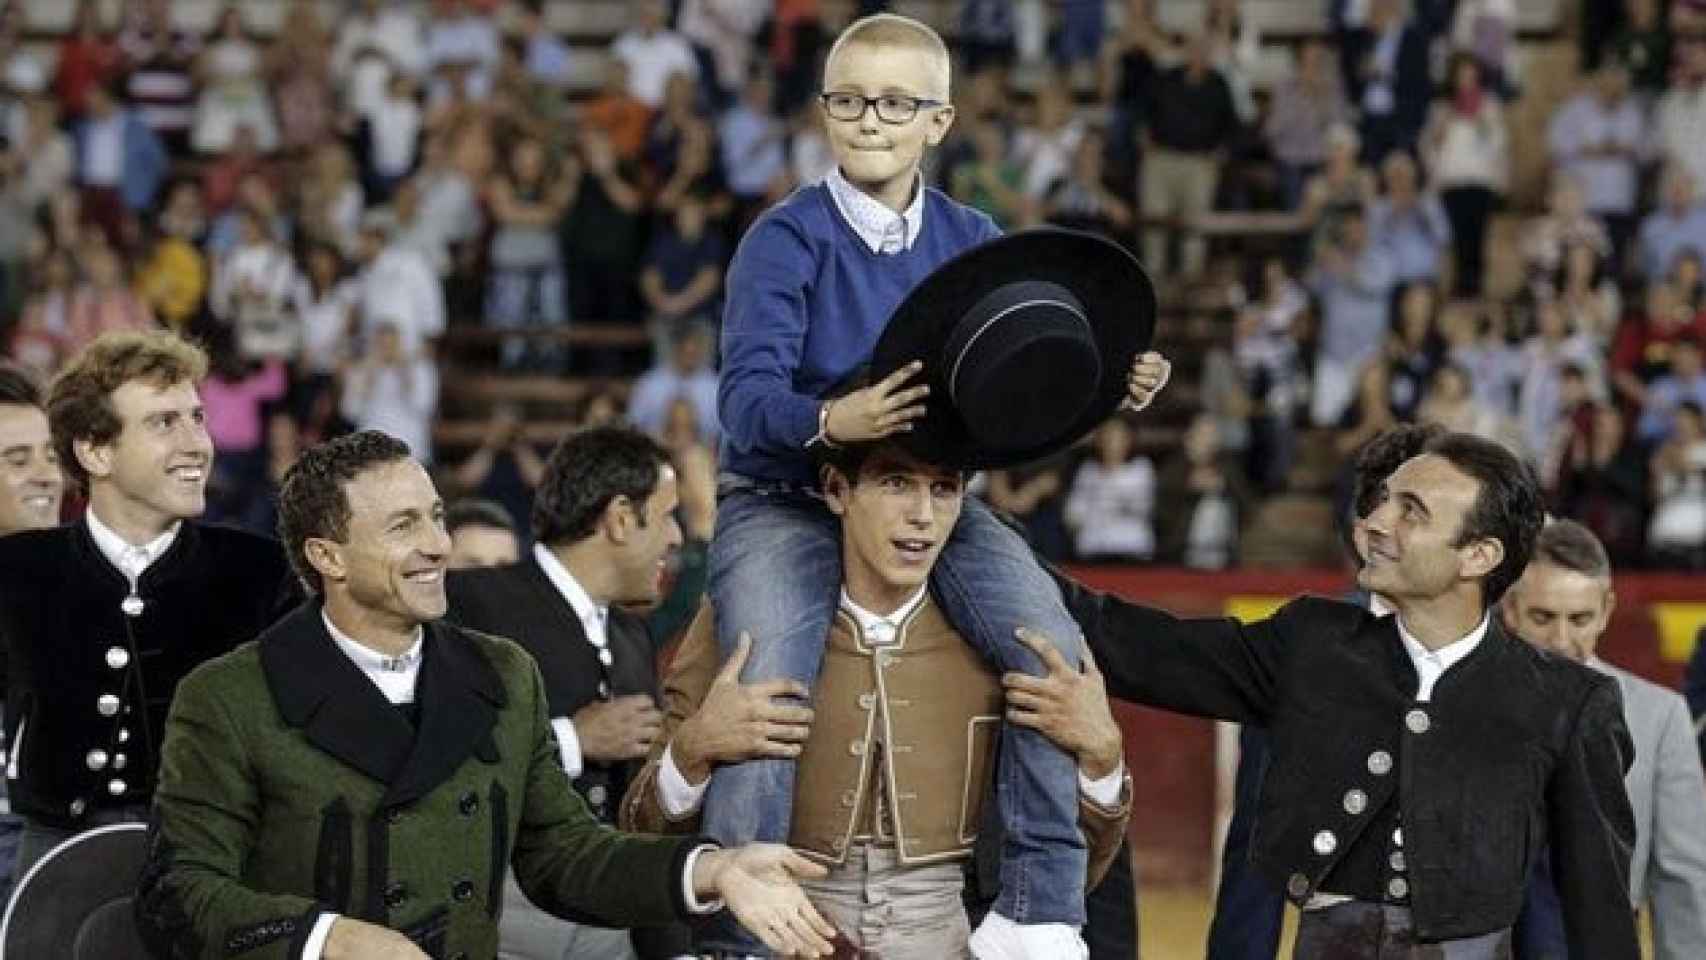 Muere Adrián, el niño valenciano con cáncer acosado en las redes porque quería ser torero